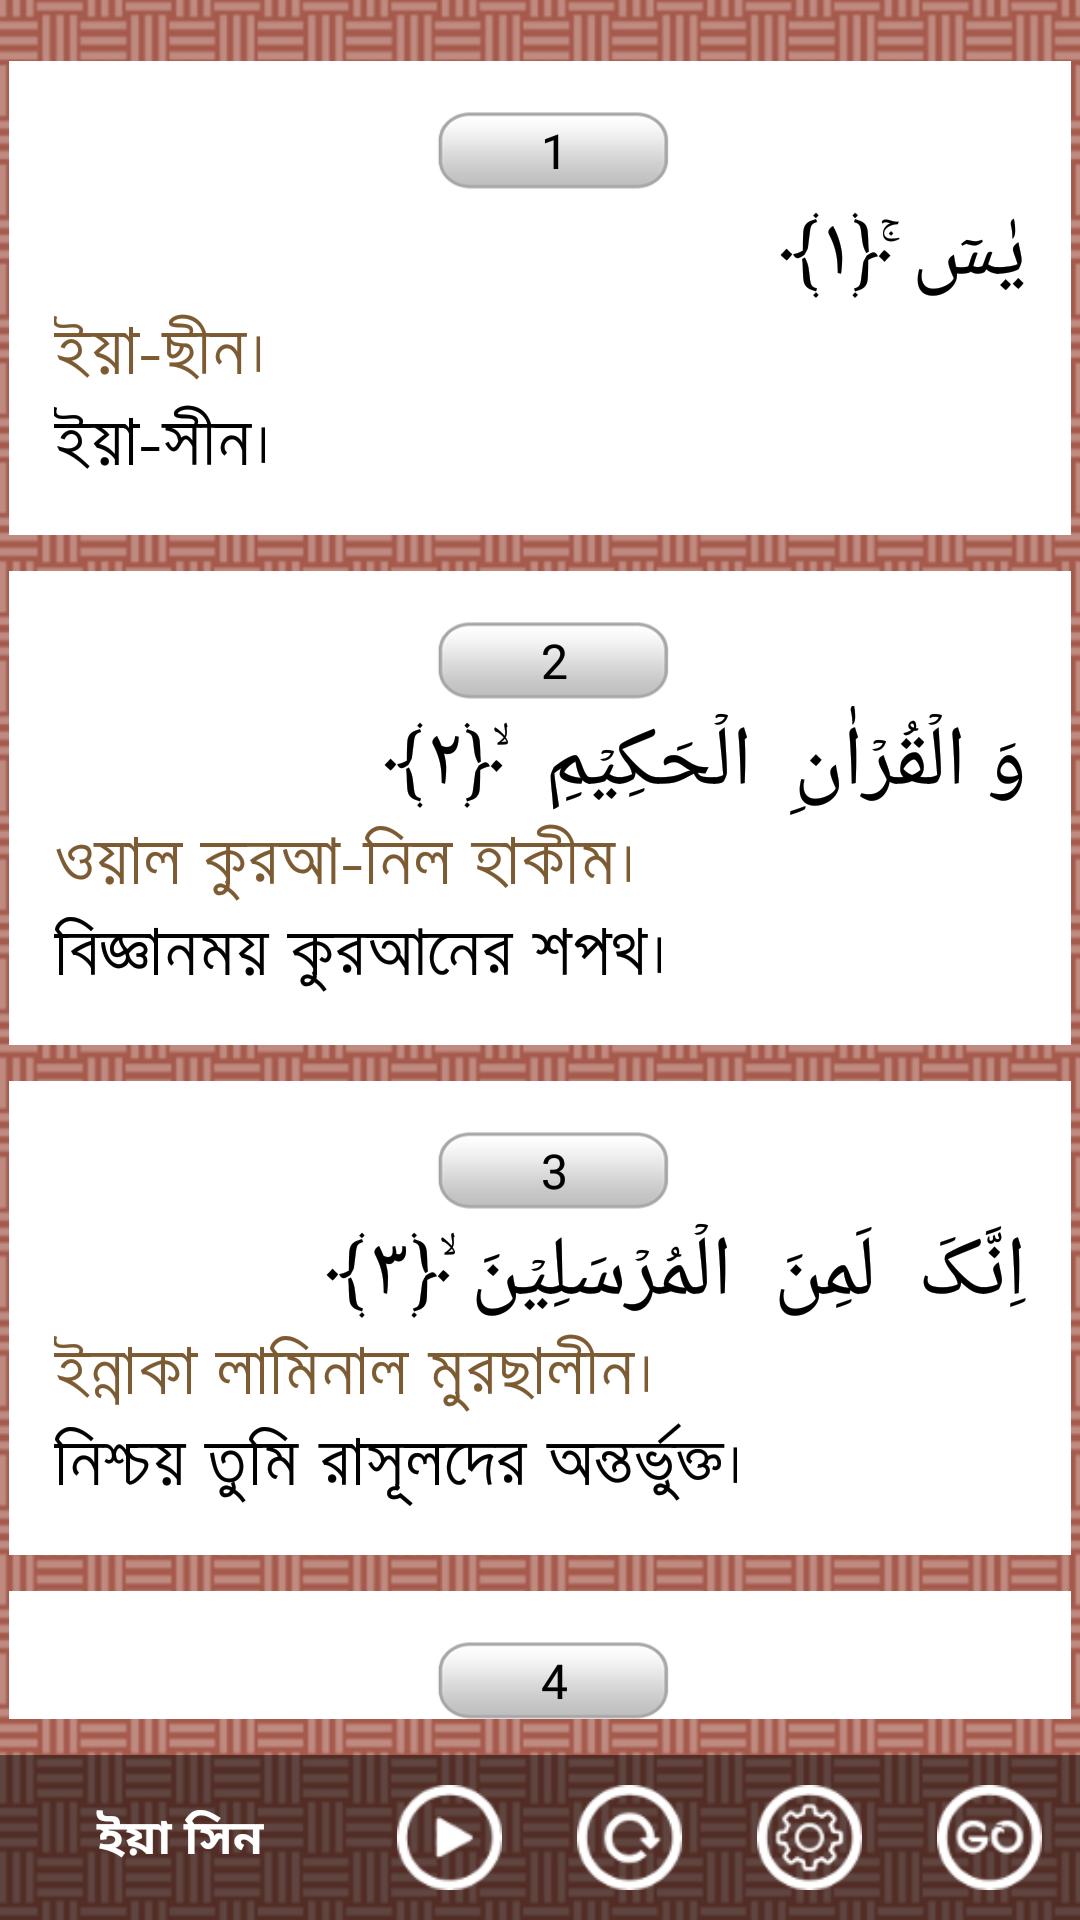 Al-Quran Bangla(Offline Audio) APK for Android Download